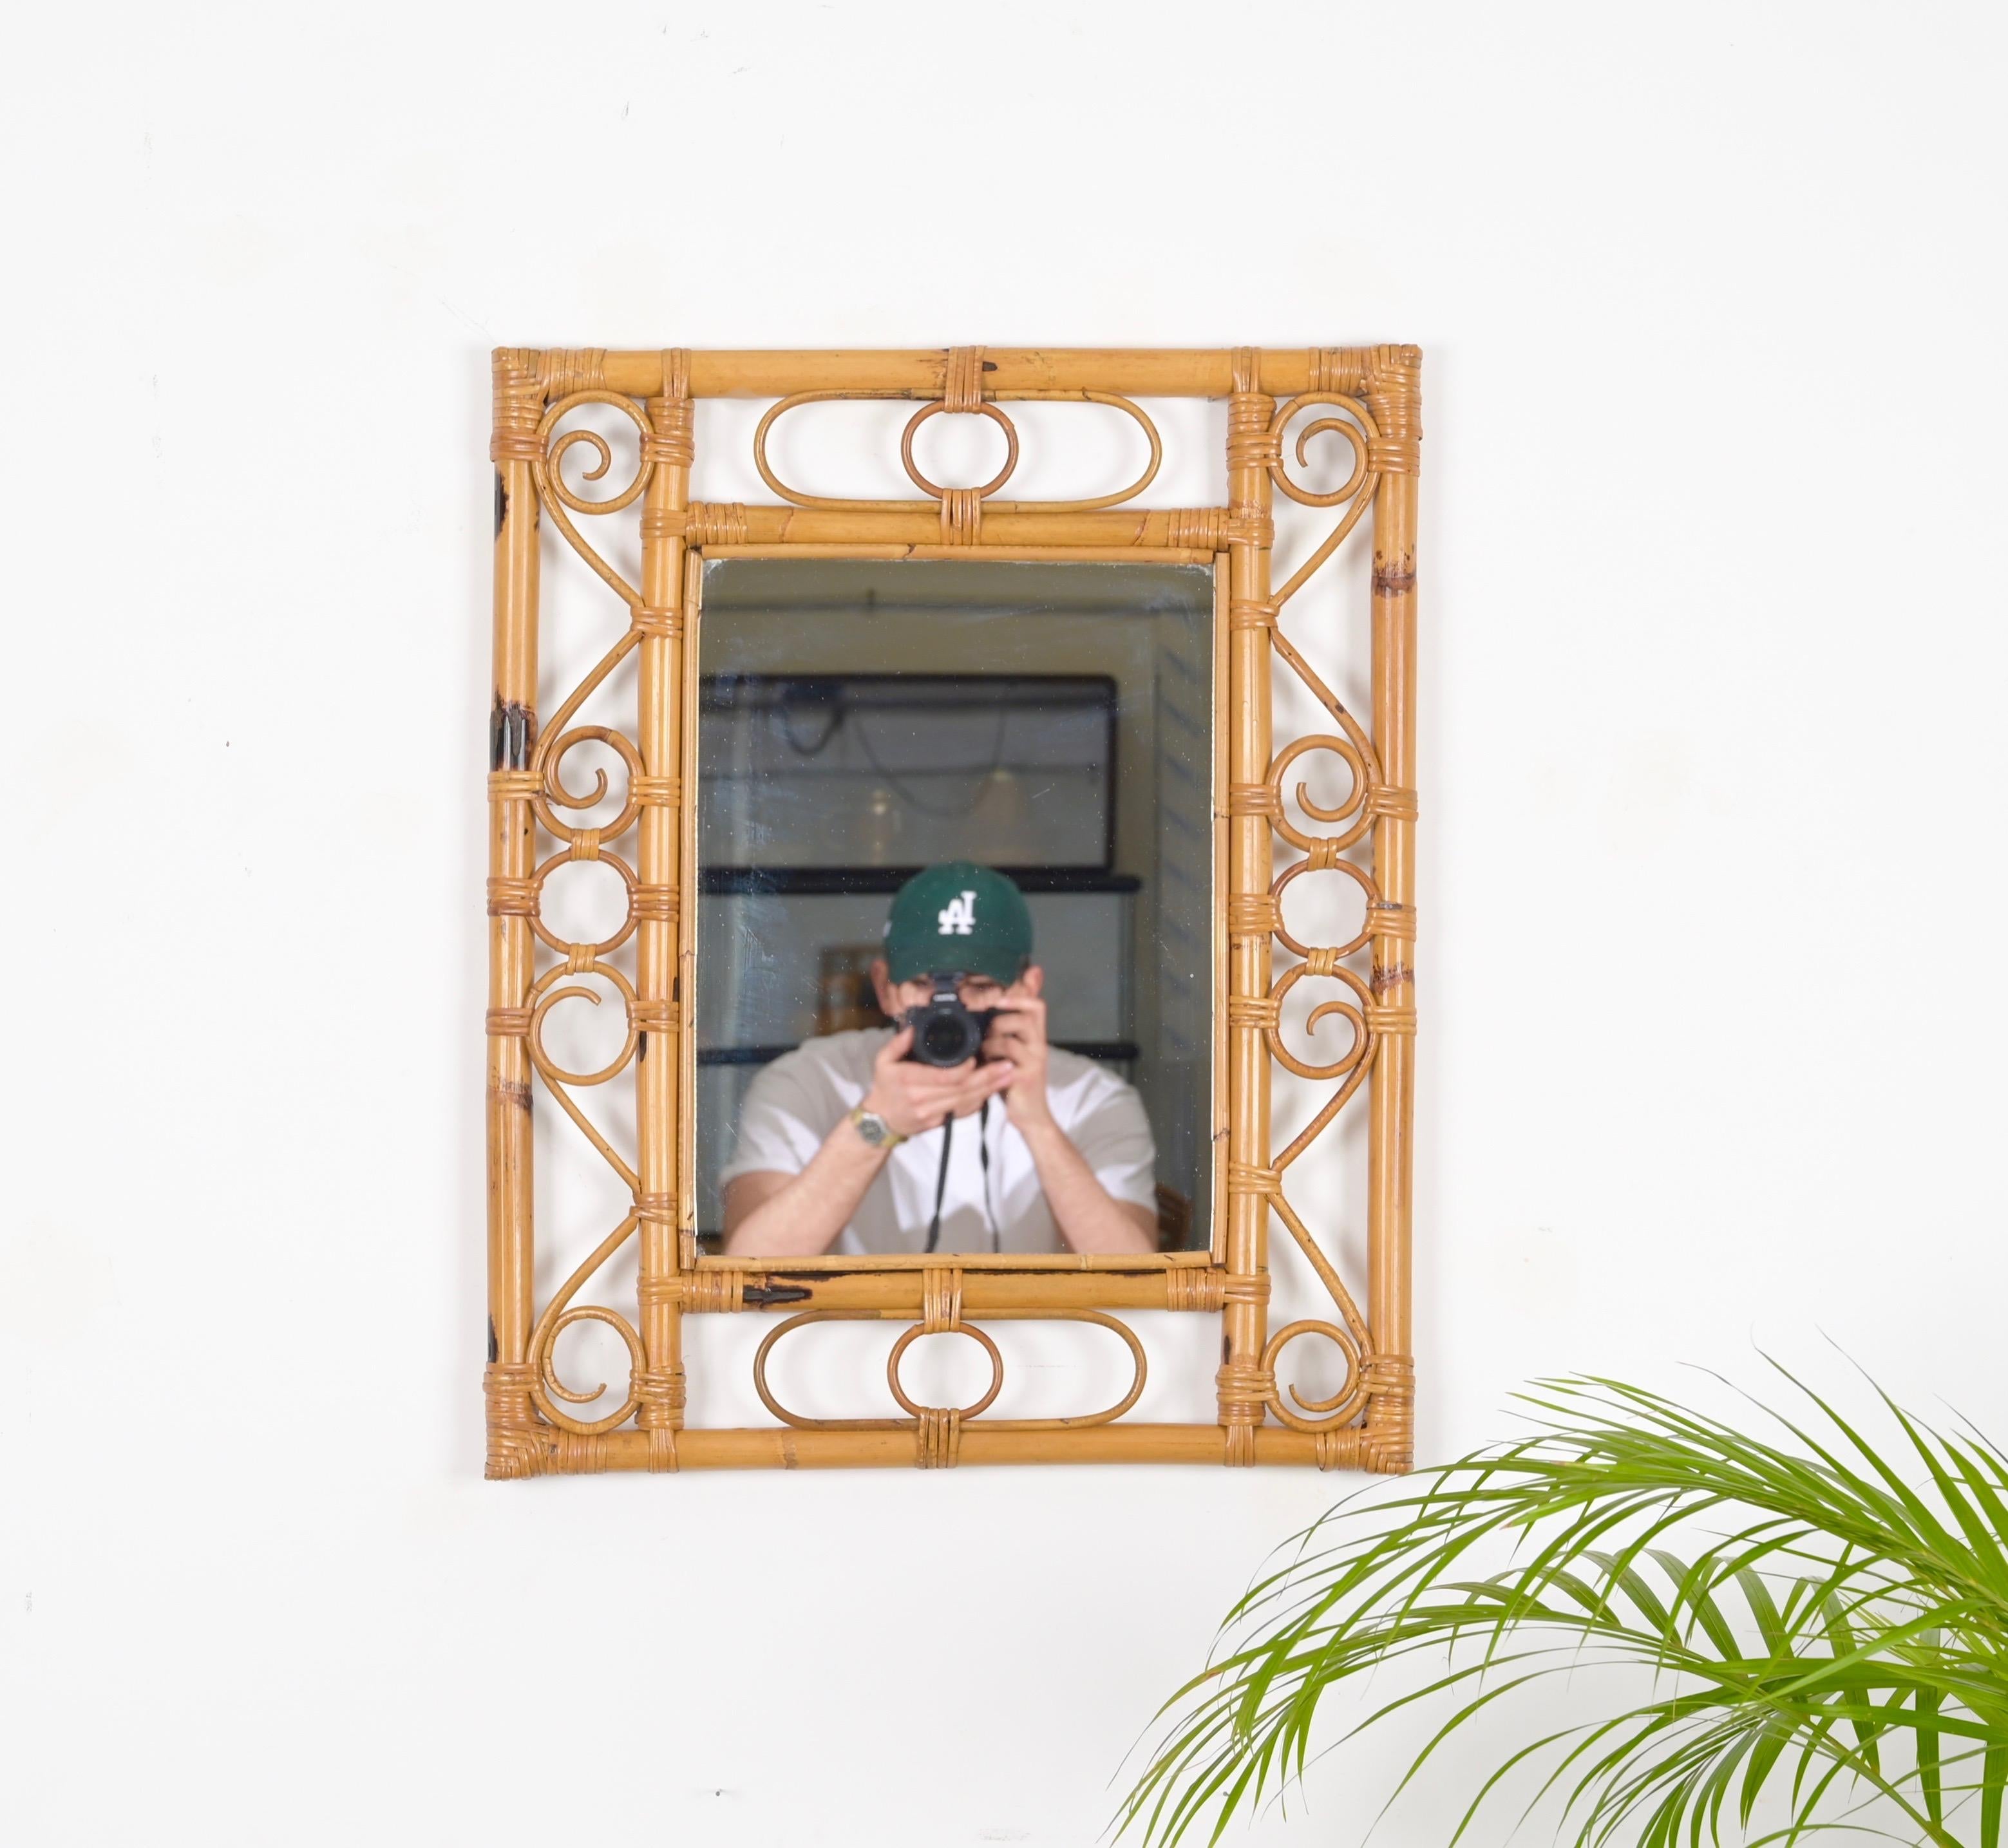 Magnifique miroir mural rectangulaire de style Côte d'Azur en bambou, rotin courbé et osier tressé à la main. Ce miroir spectaculaire a été produit en Italie dans les années 1960.

Ce ravissant miroir présente un double cadre rectangulaire en